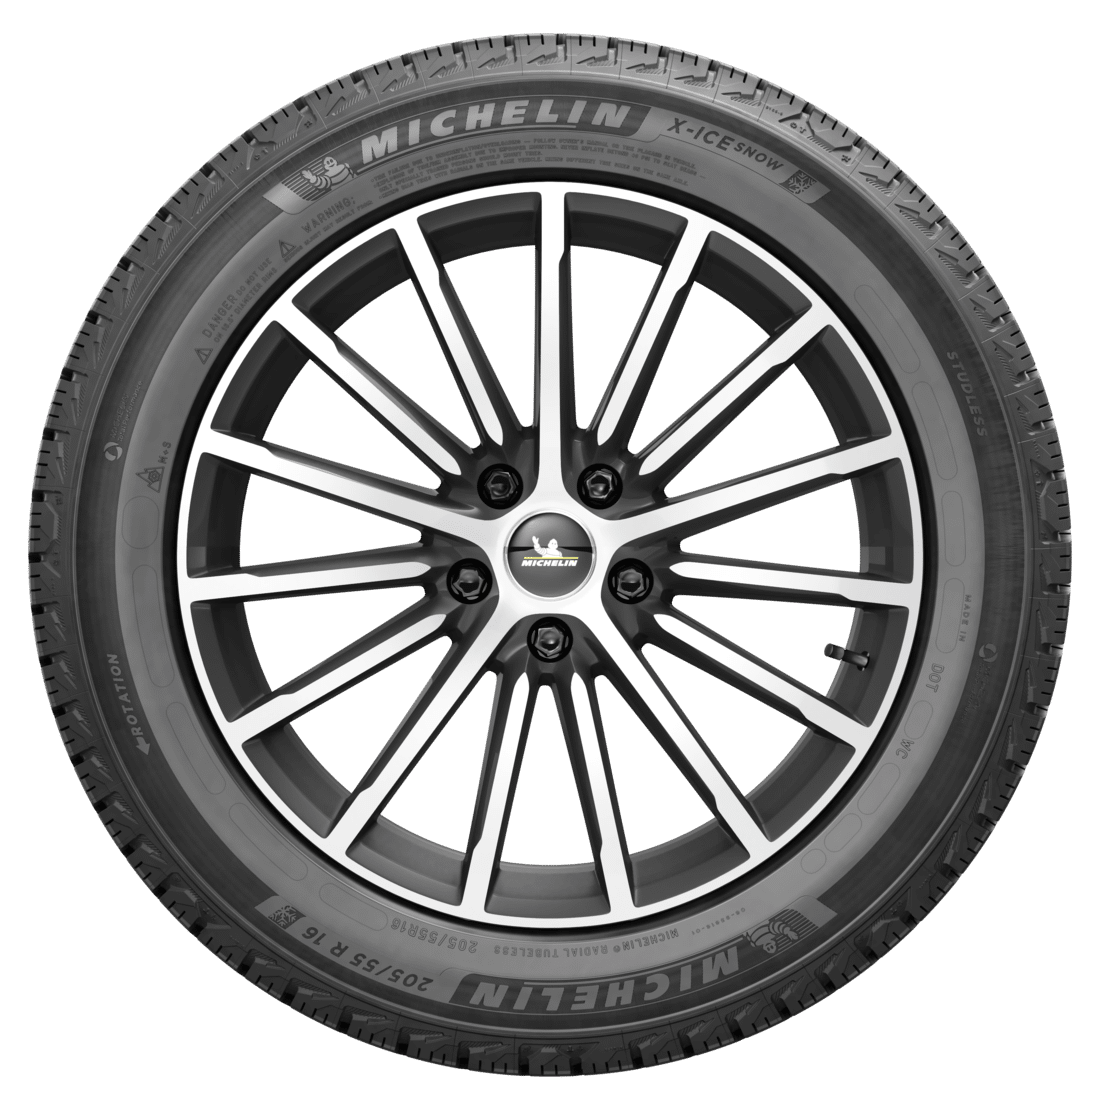 Michelin X-Ice Snow | Winter Tire - Mazda Shop | Genuine Mazda